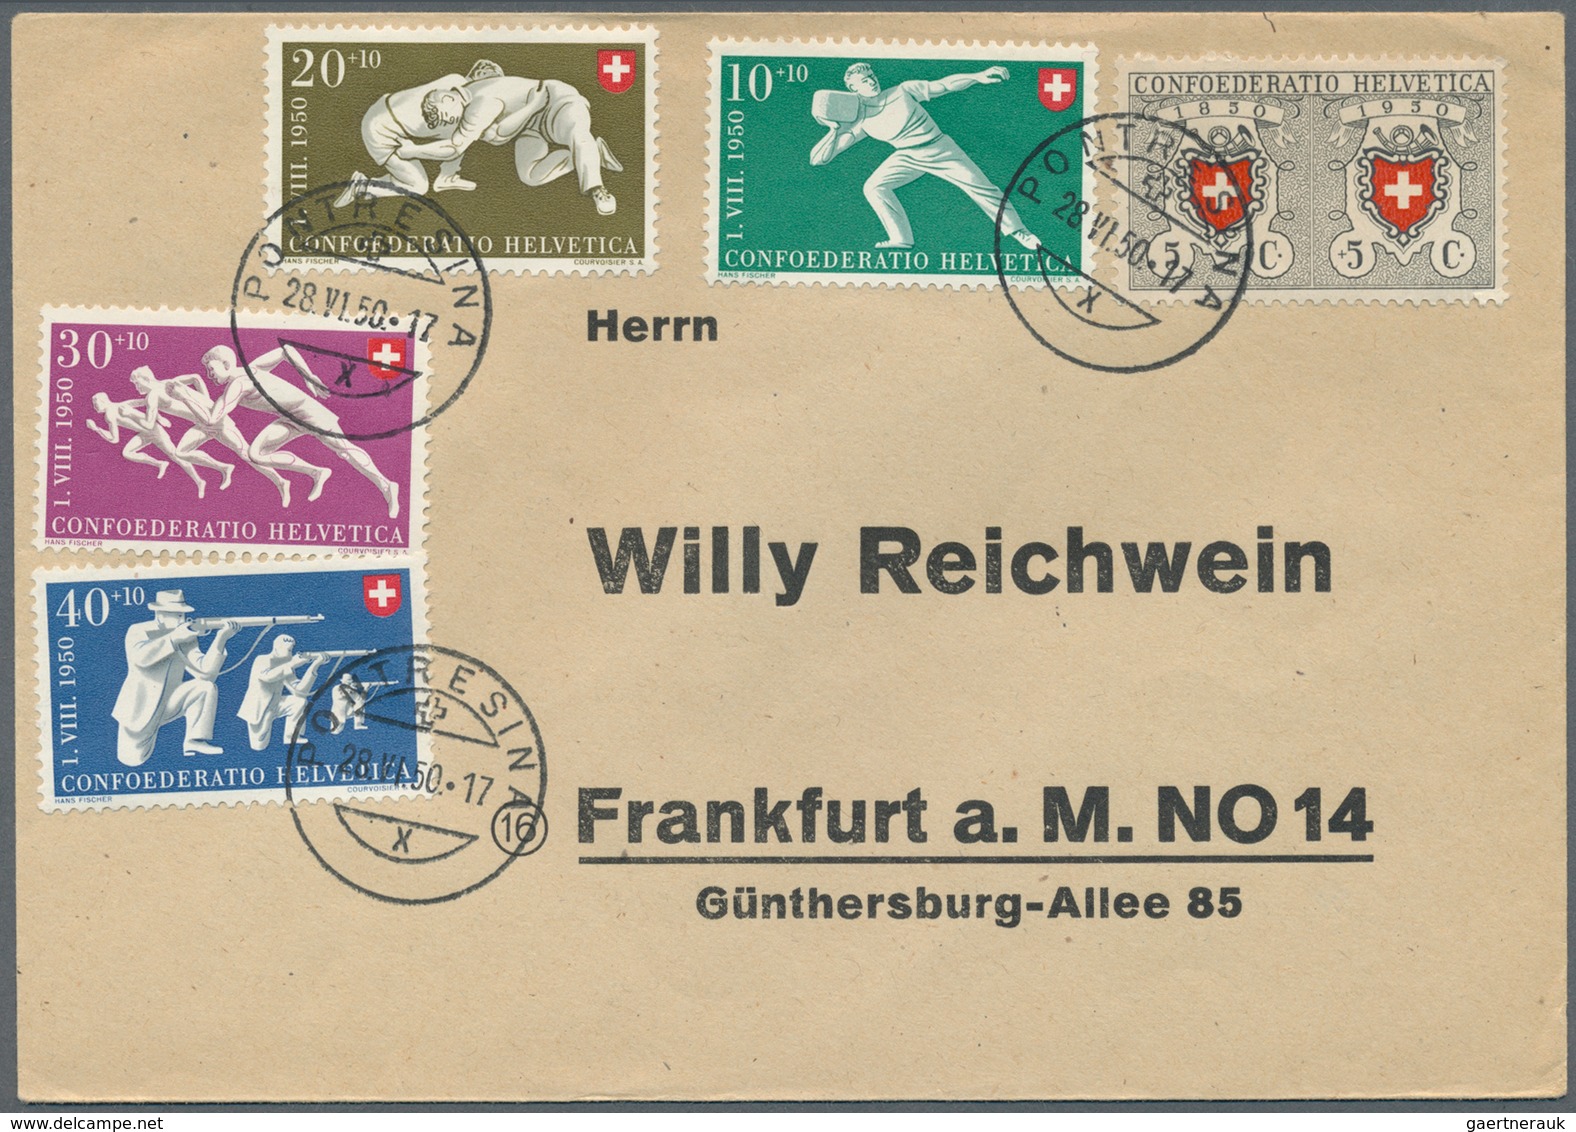 28085 Schweiz: 1925/1962, Lot von 50 philatelistischen Briefen und Karten, dabei Luftpost, bessere FDCs, d